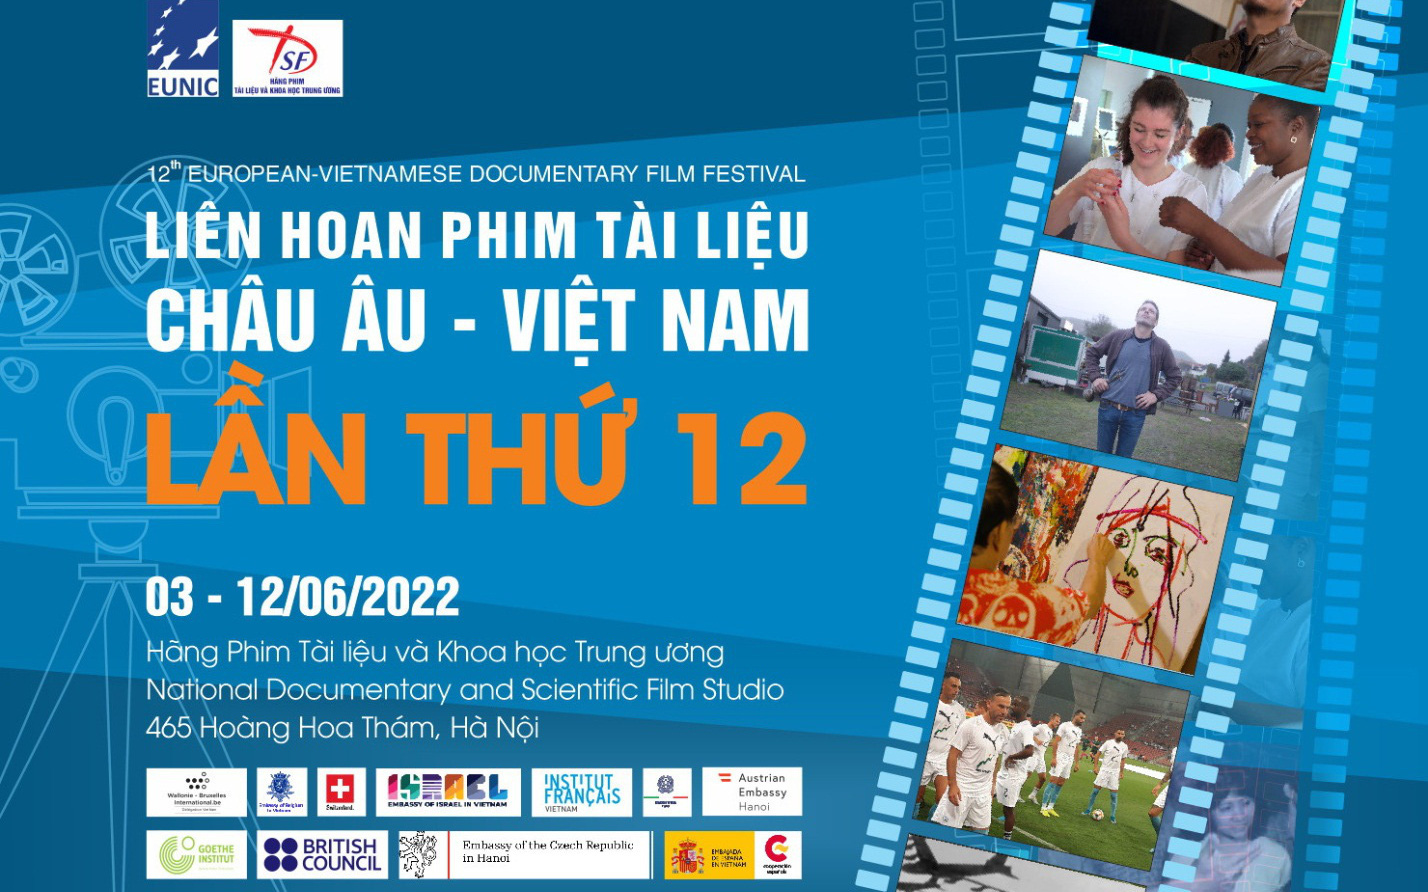 Liên hoan phim tài liệu Việt Nam - châu Âu